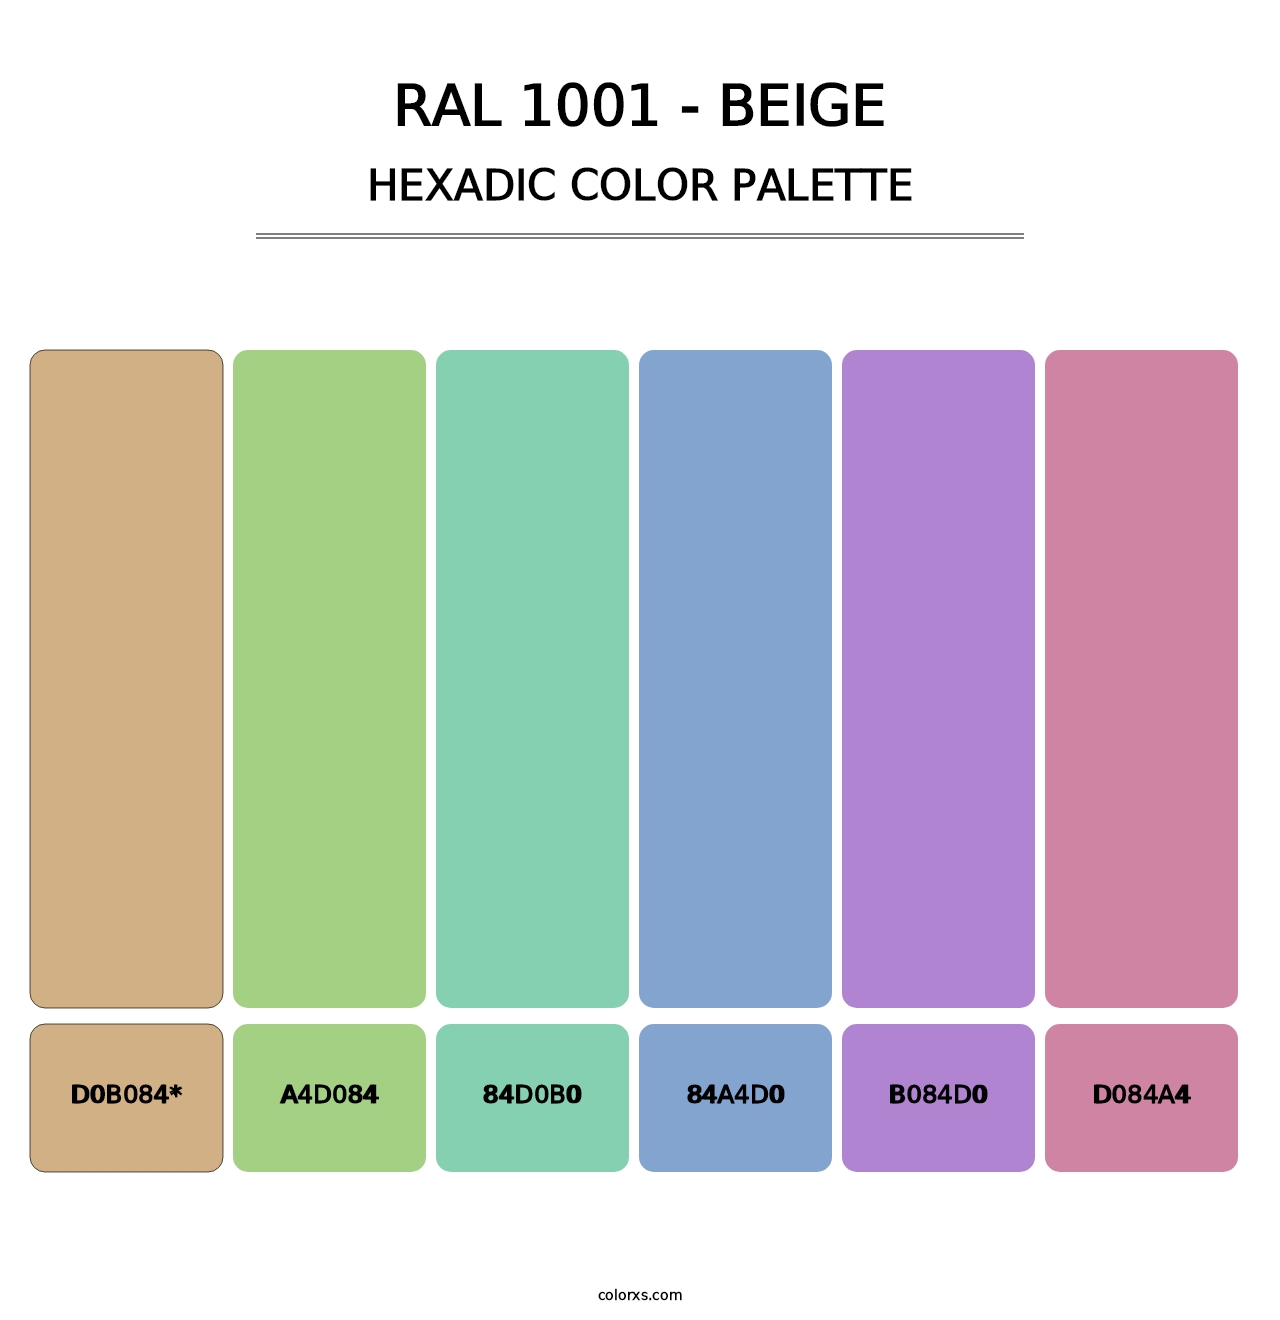 RAL 1001 - Beige - Hexadic Color Palette